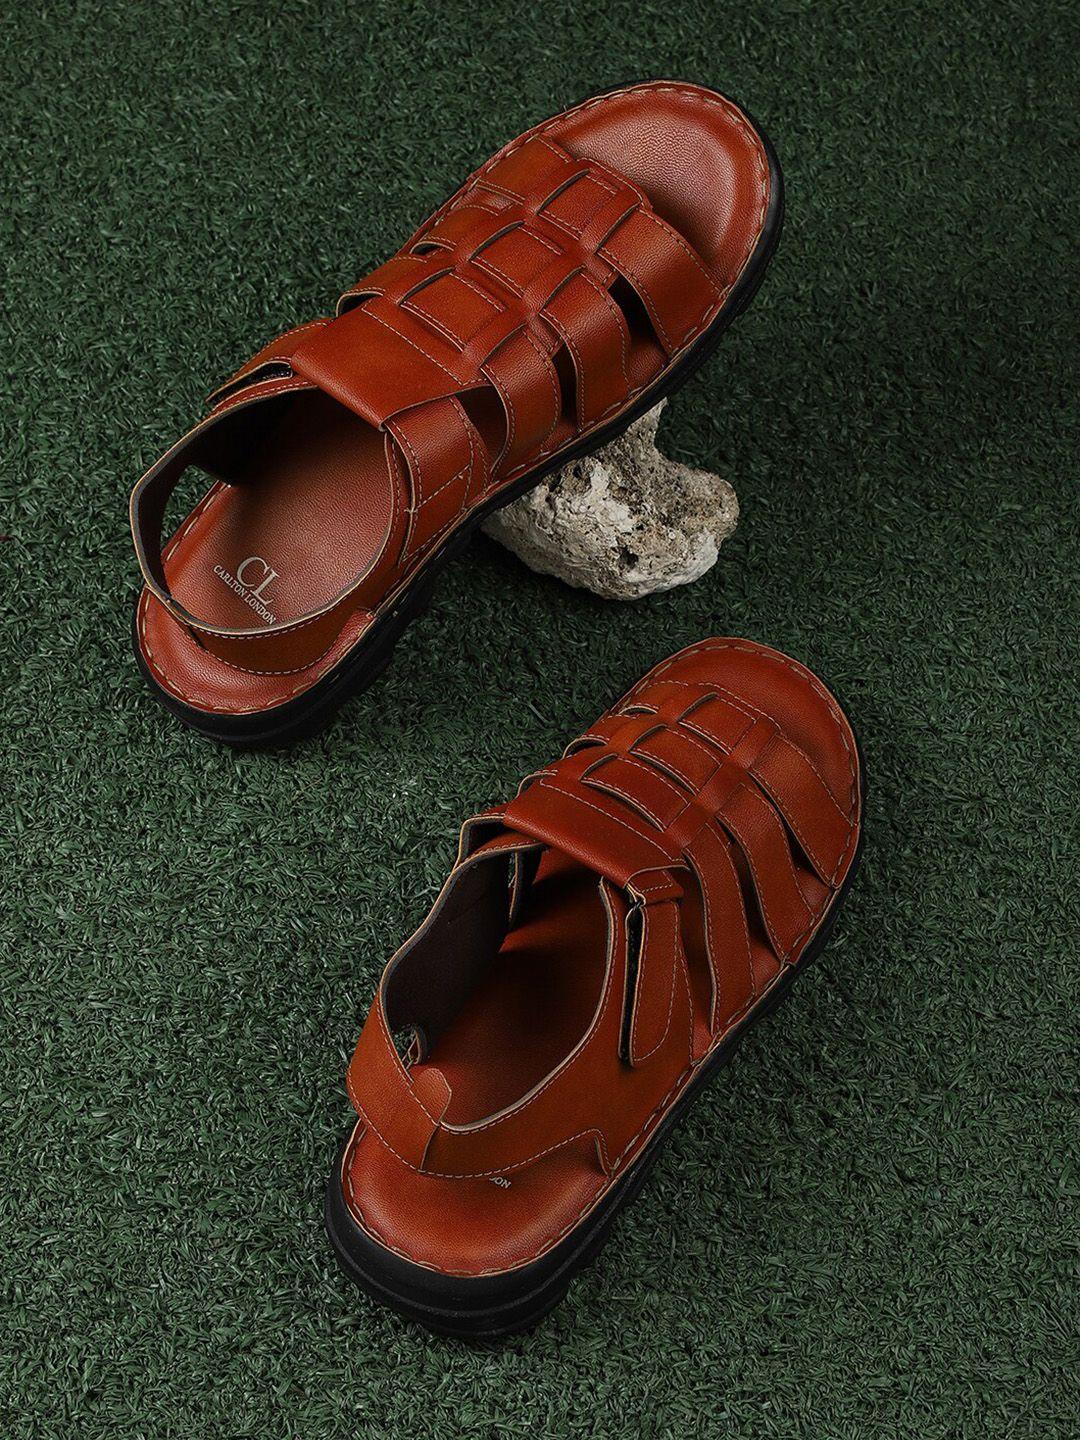 carlton london men tan comfort sandals